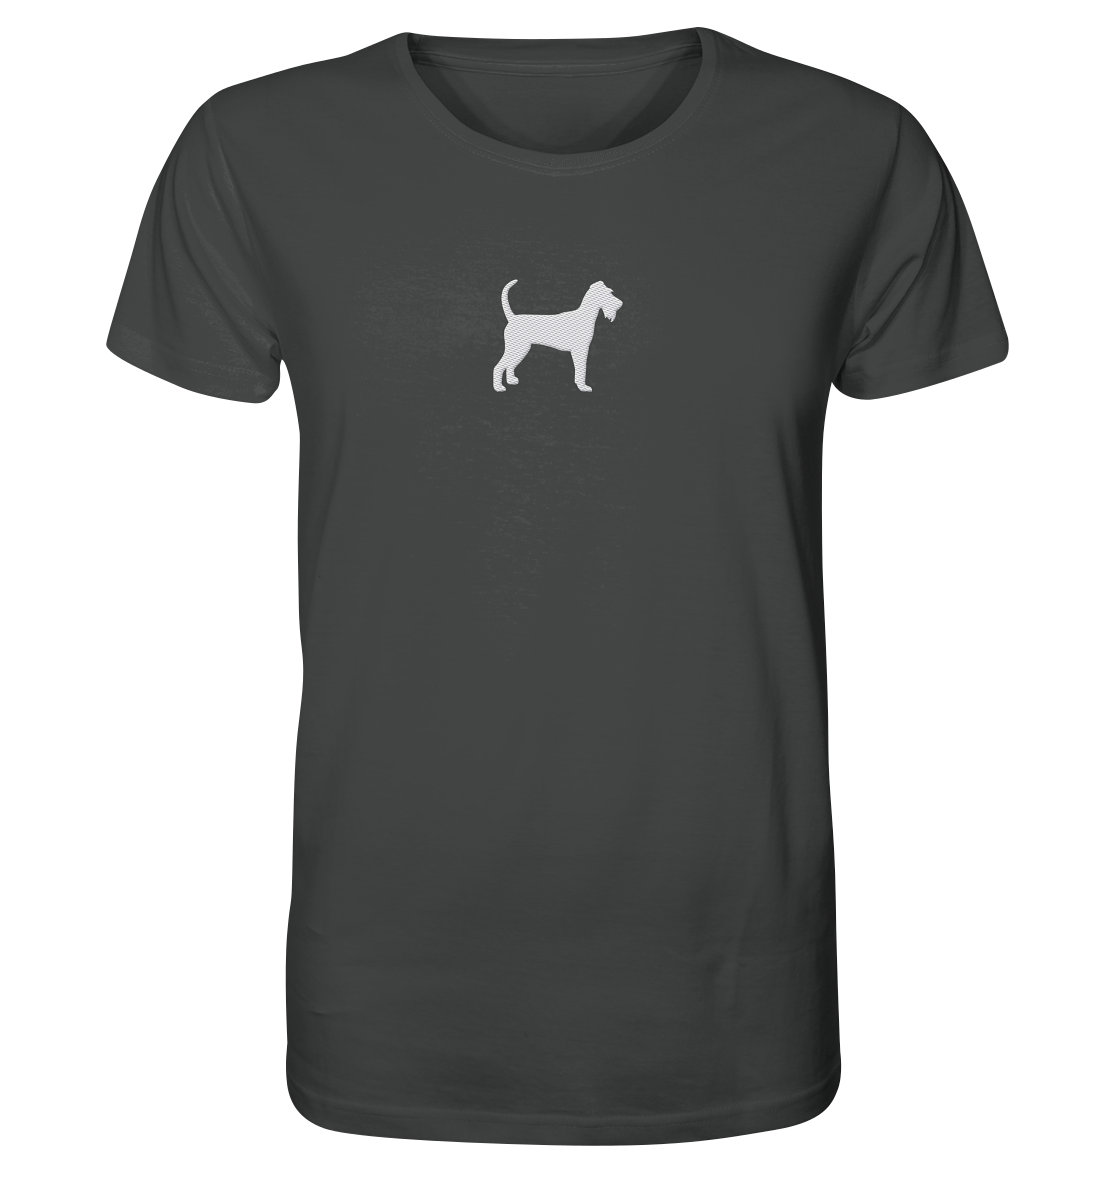 Irish Terrier-Silhouette - Organic Shirt (Stick)